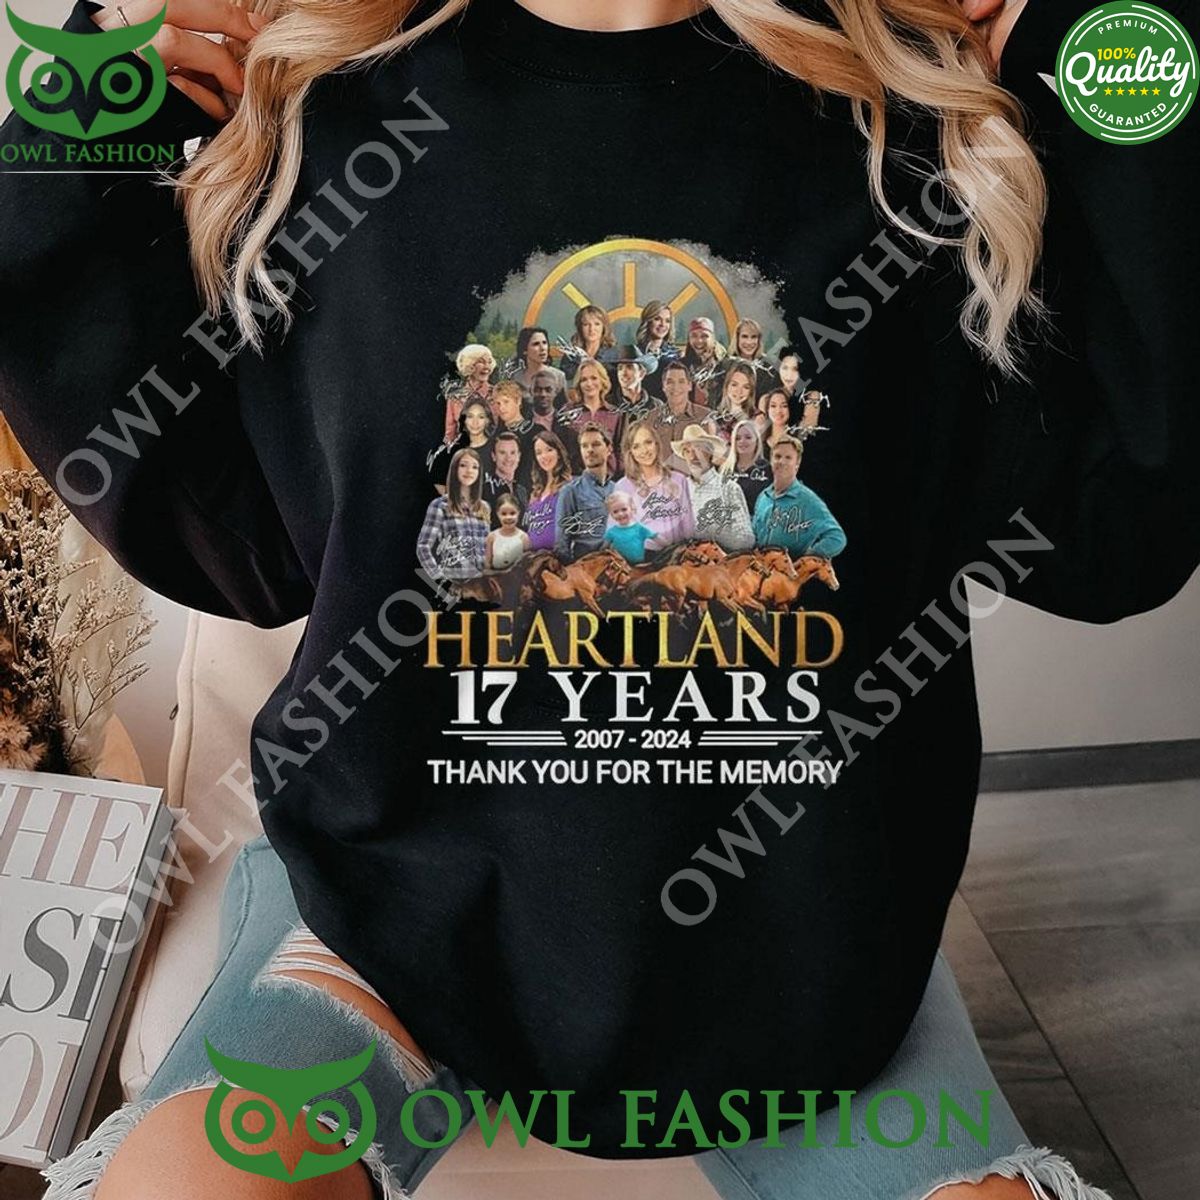 Heartland 17 Years 2007-2024 Memories Limited Hoodie Shirt